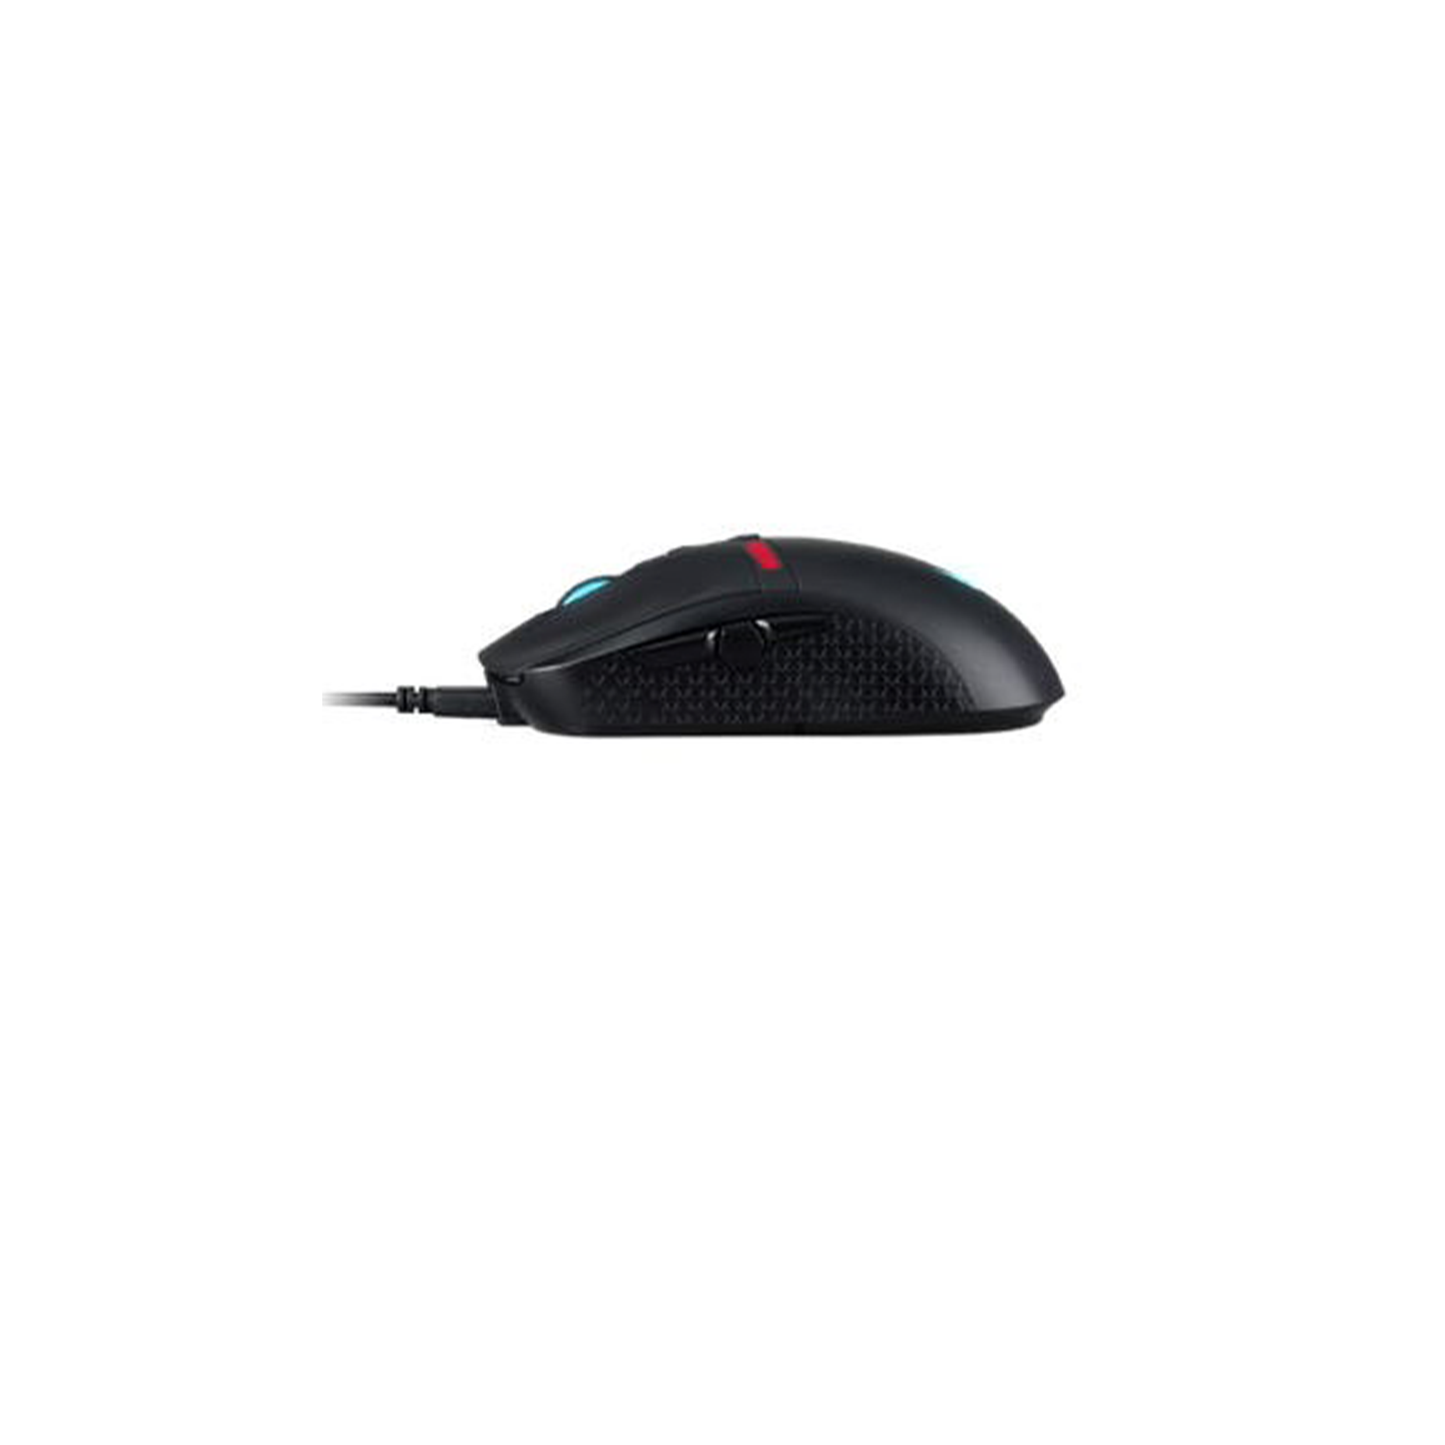 Predator Cestus 350 Gaming Mouse